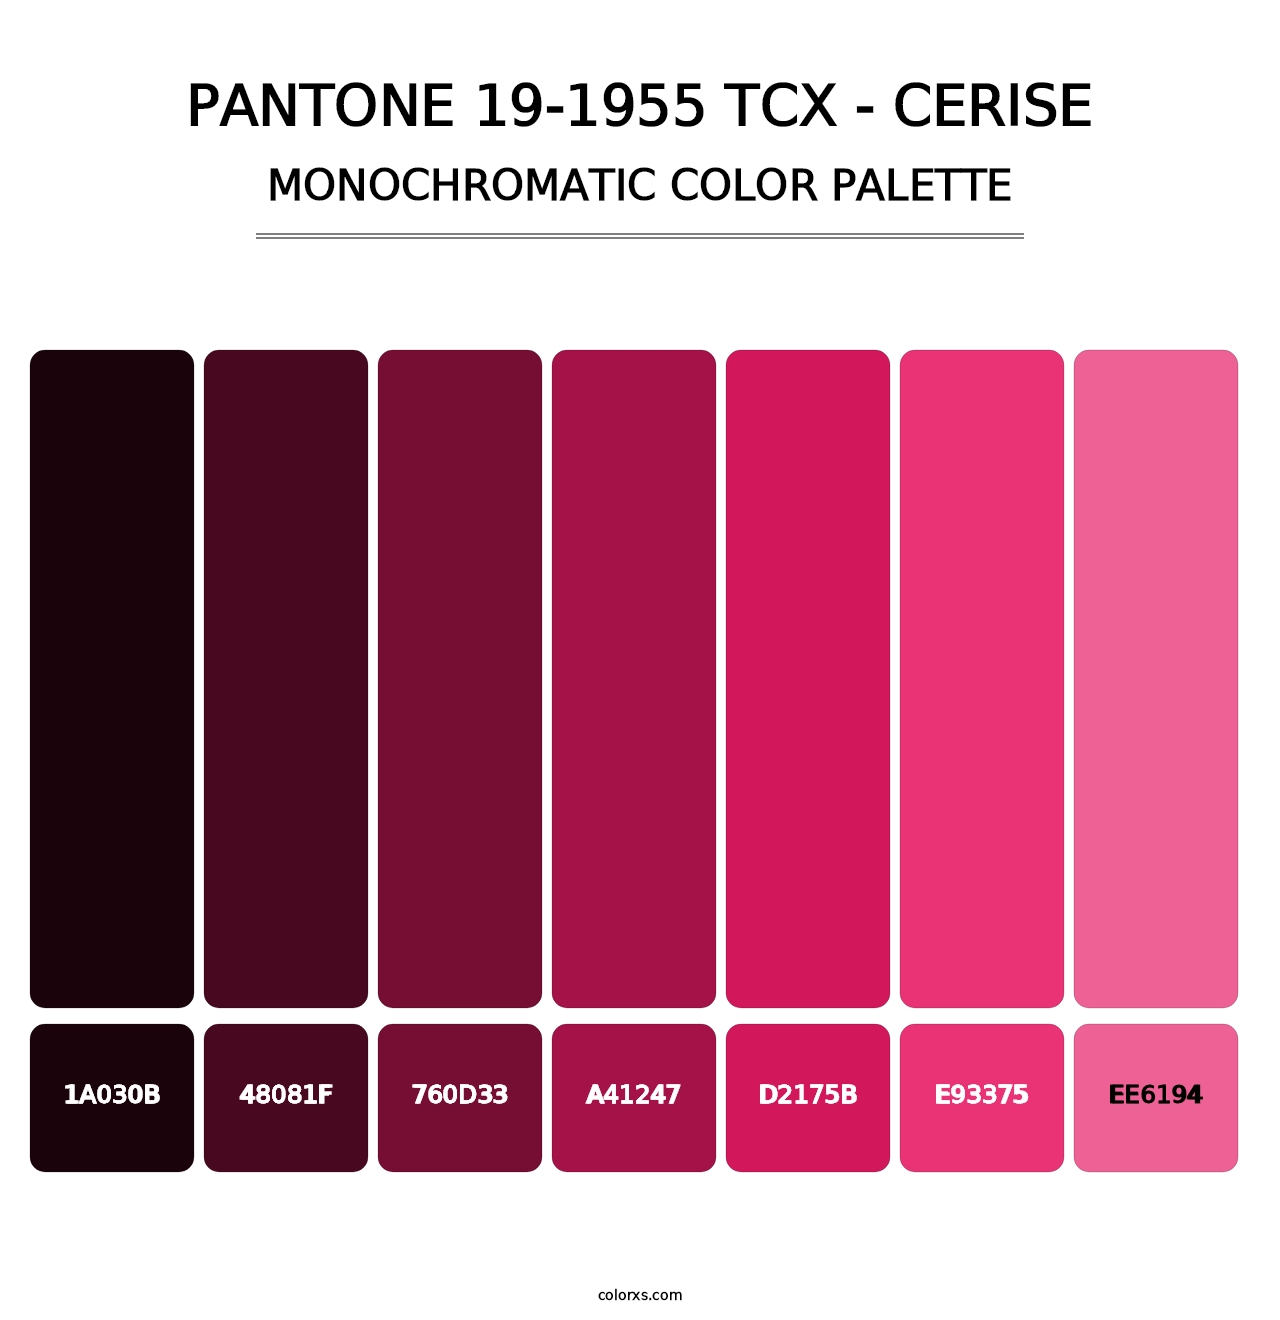 PANTONE 19-1955 TCX - Cerise - Monochromatic Color Palette